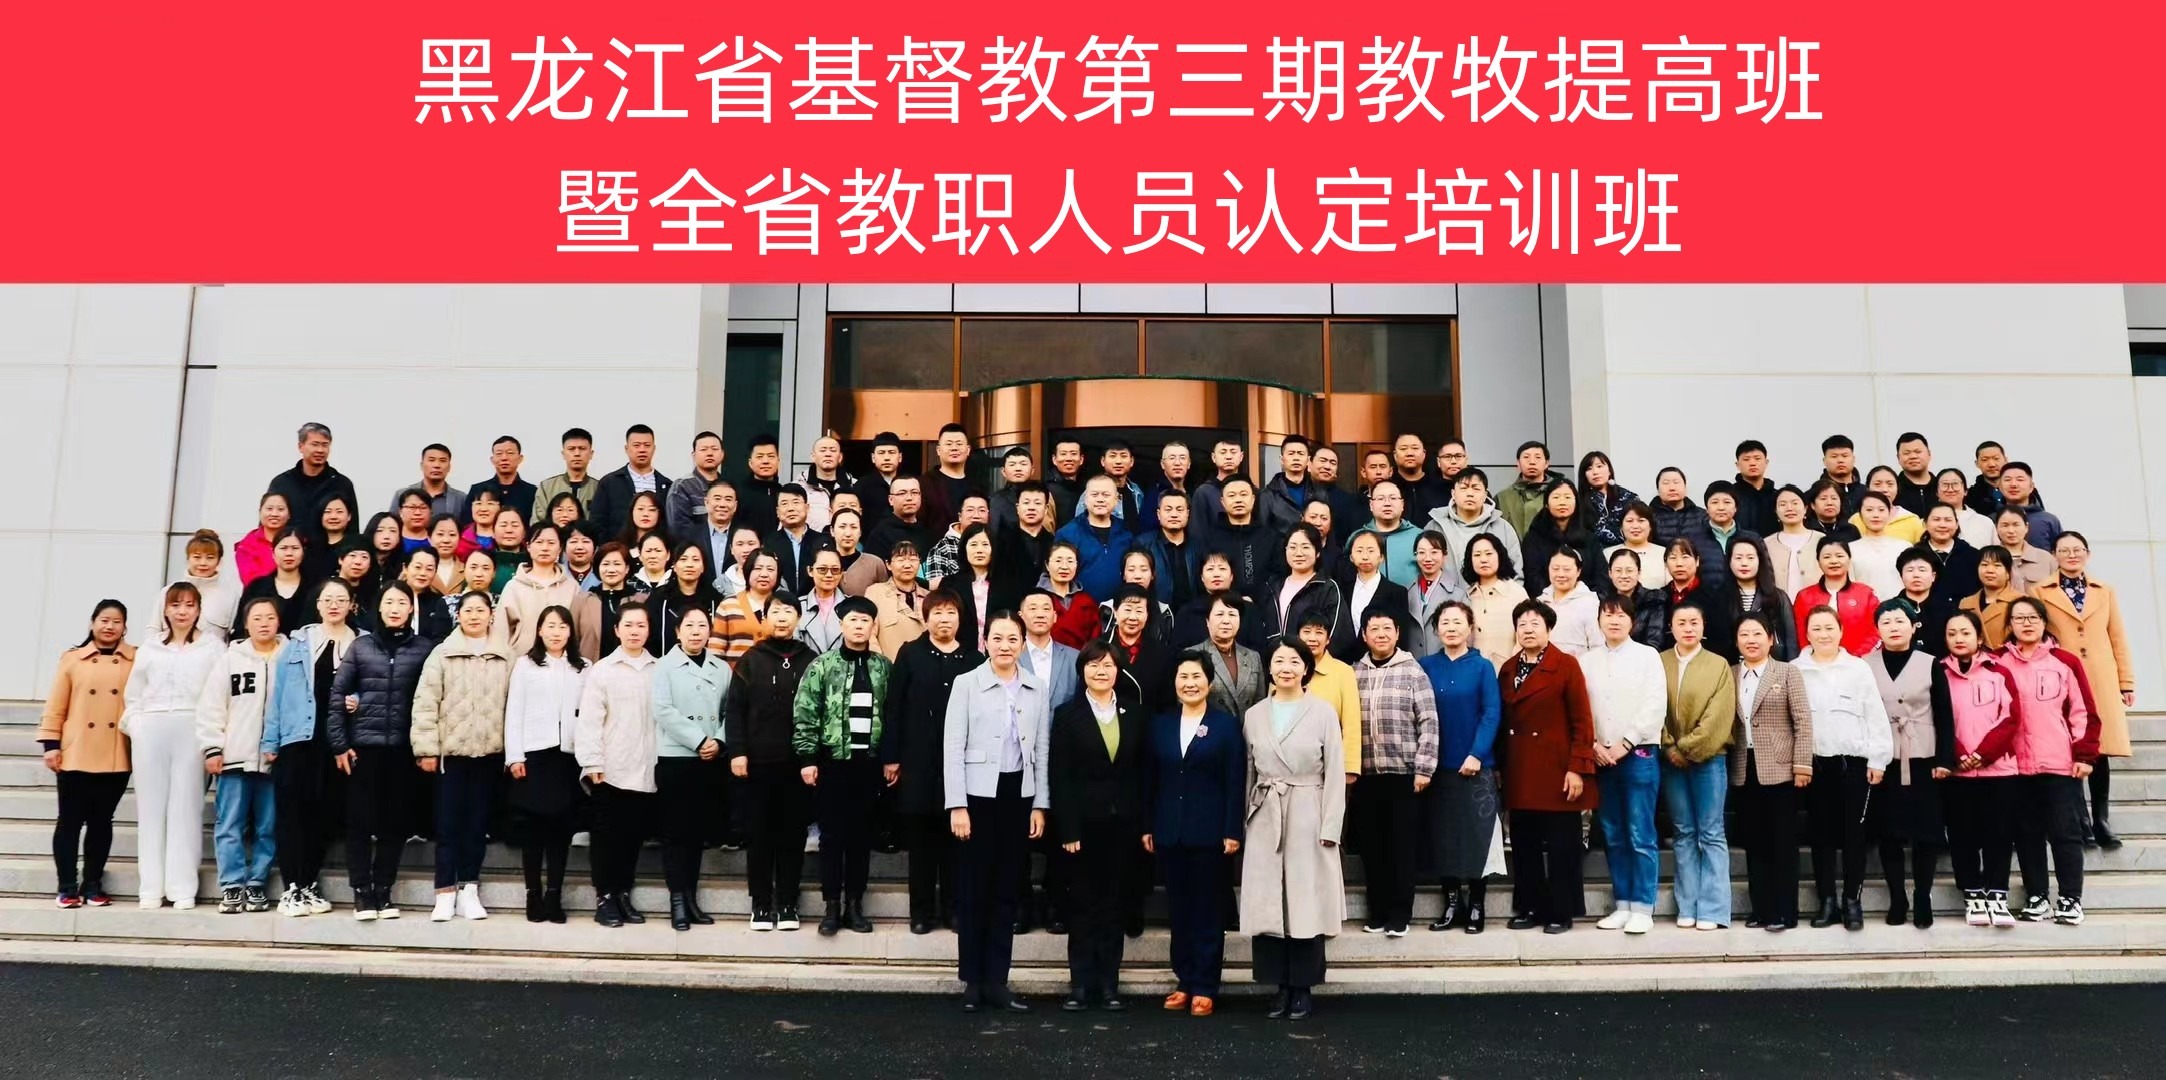 黑龙江省基督教举行第三期教牧提高班暨全省教职人员认定培训班